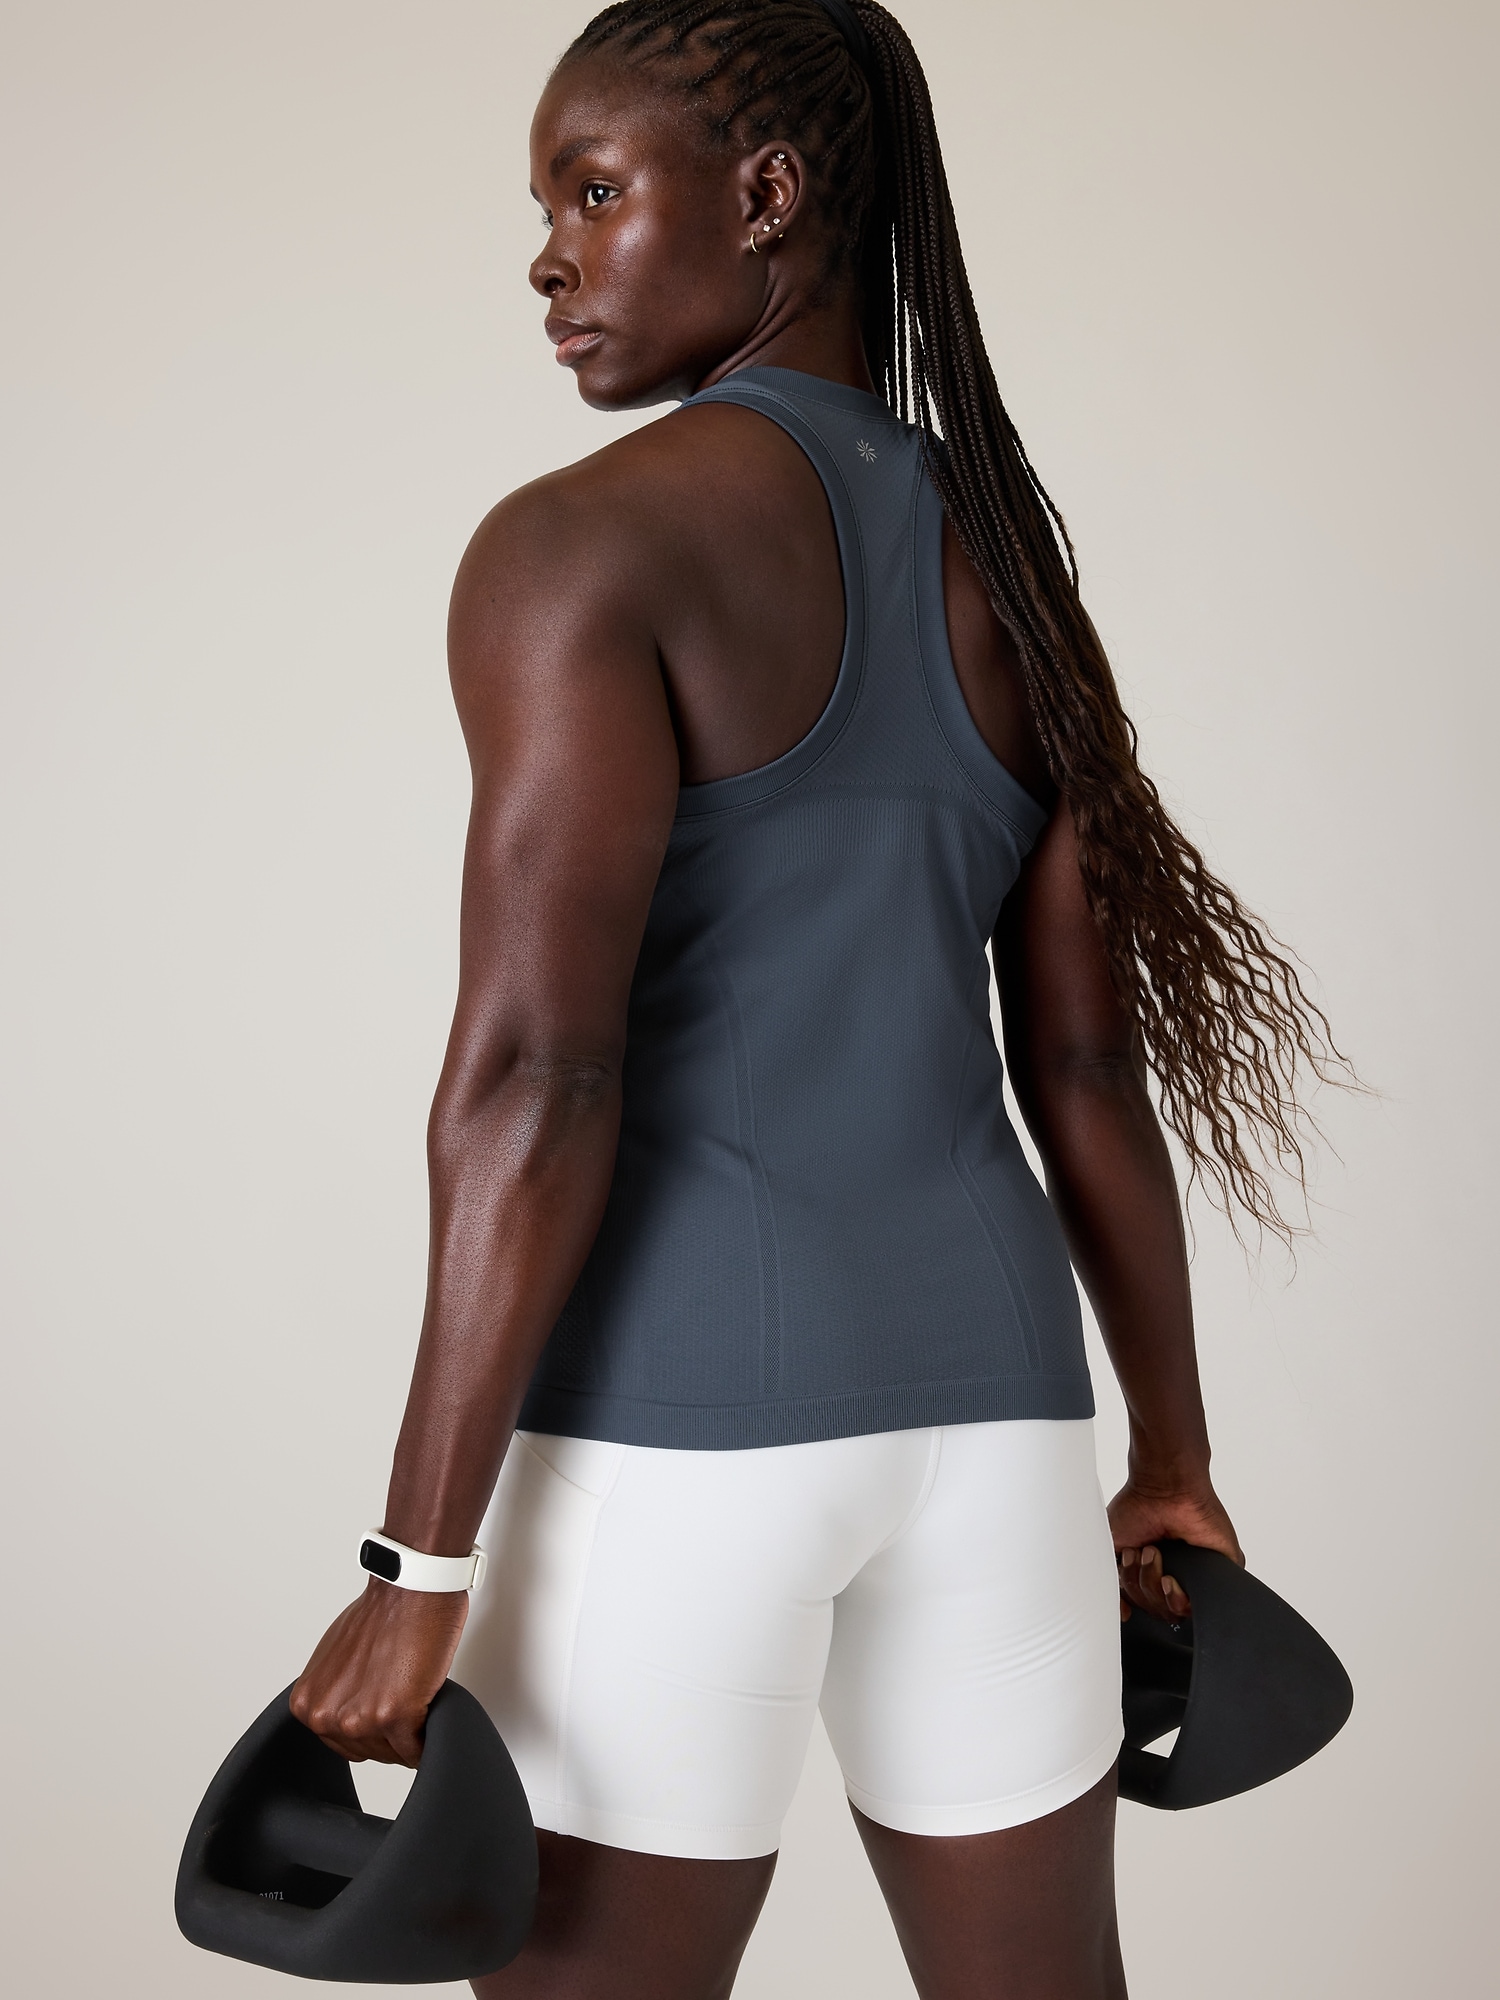 Nike Dri Fit Neon Pink/ Blue Striped Workout Tank Top Women's Size Sma -  beyond exchange